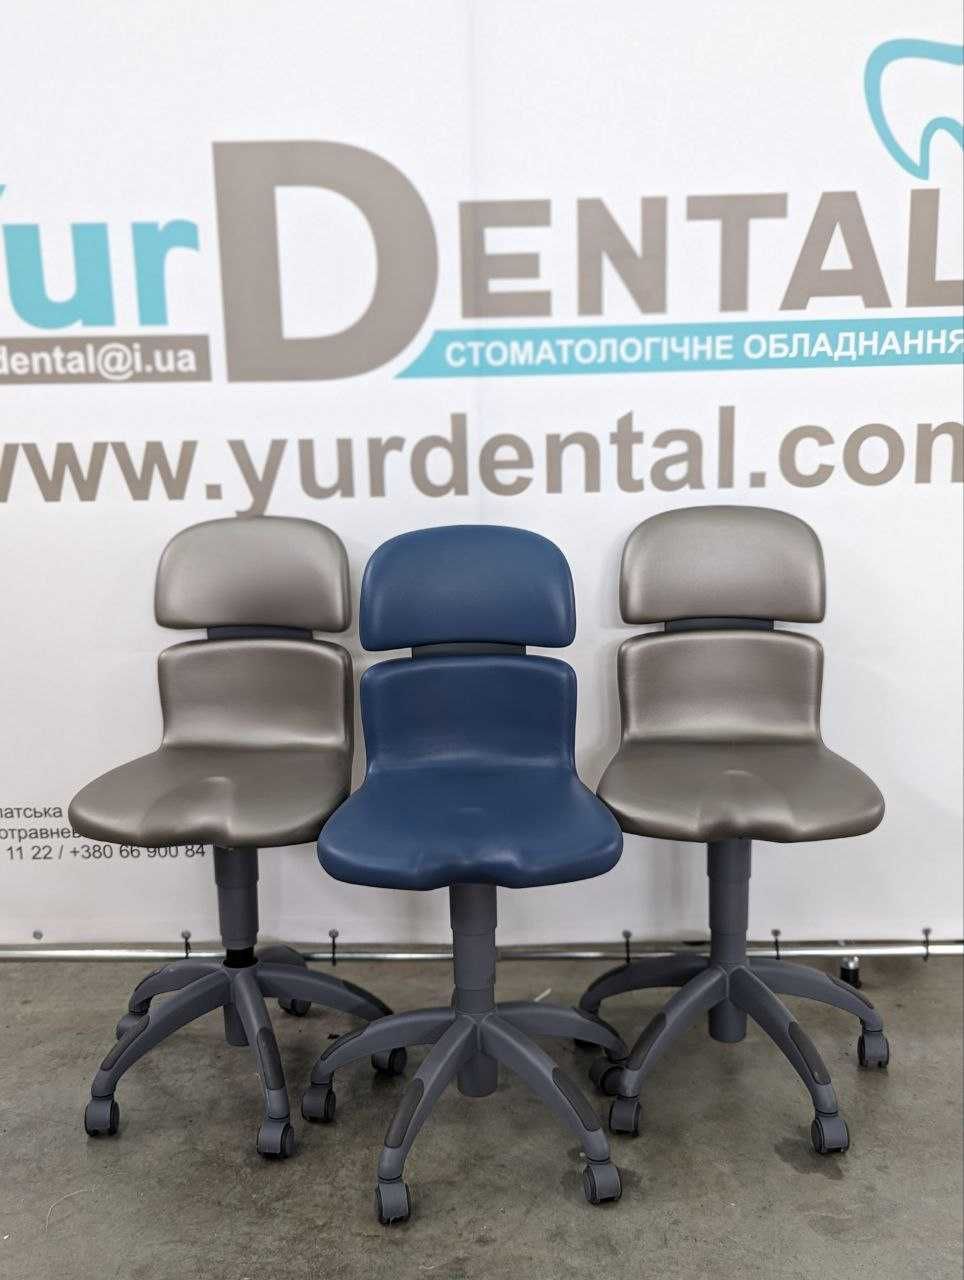 Нові стоматологічні стільці Sirona Hugo